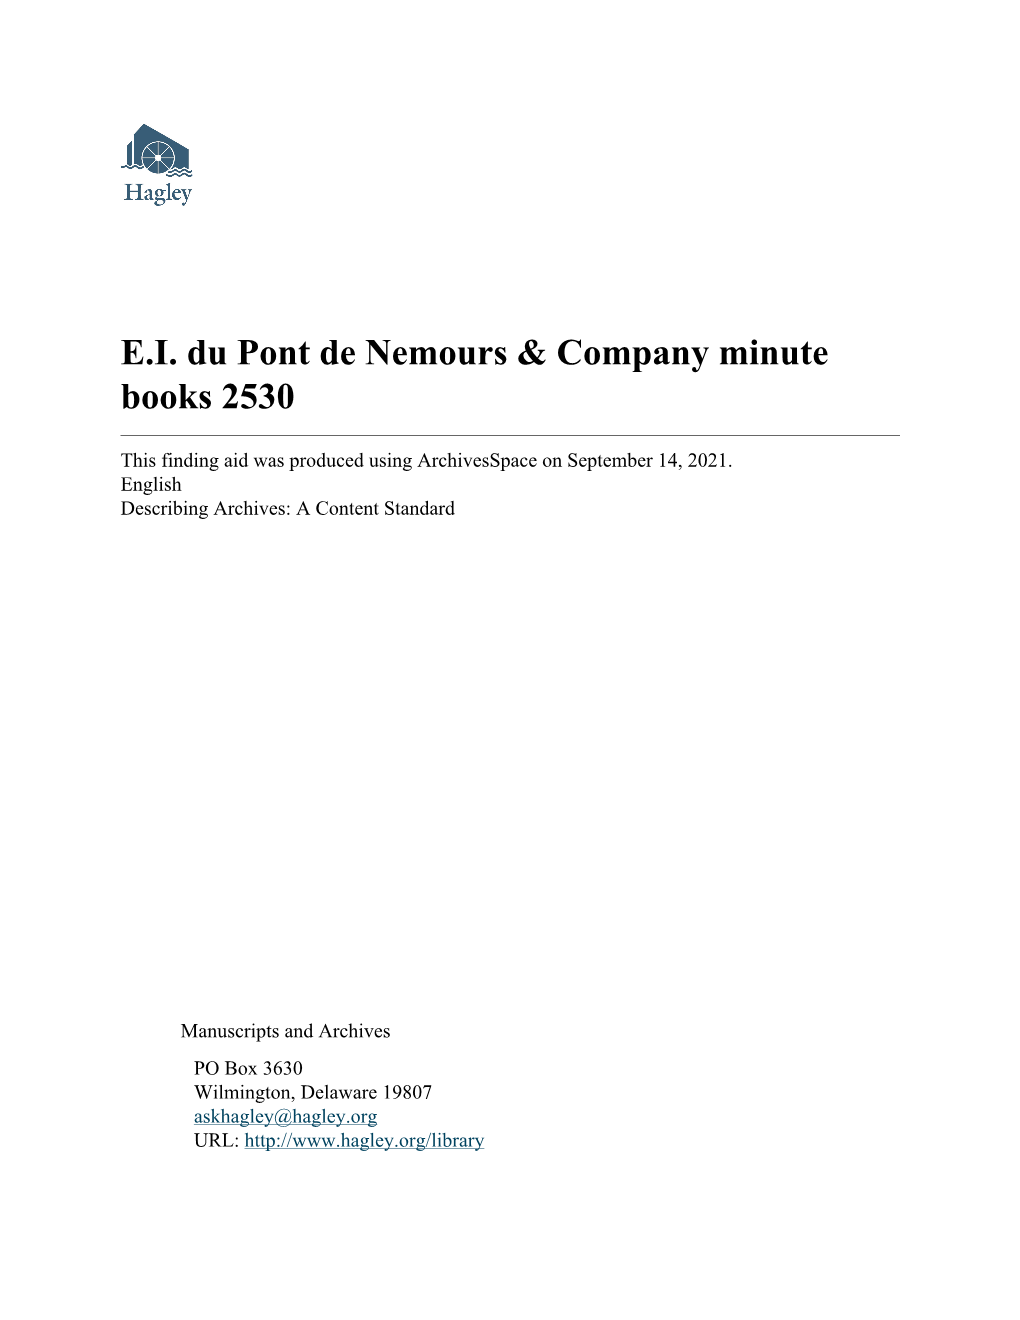 E.I. Du Pont De Nemours & Company Minute Books 2530